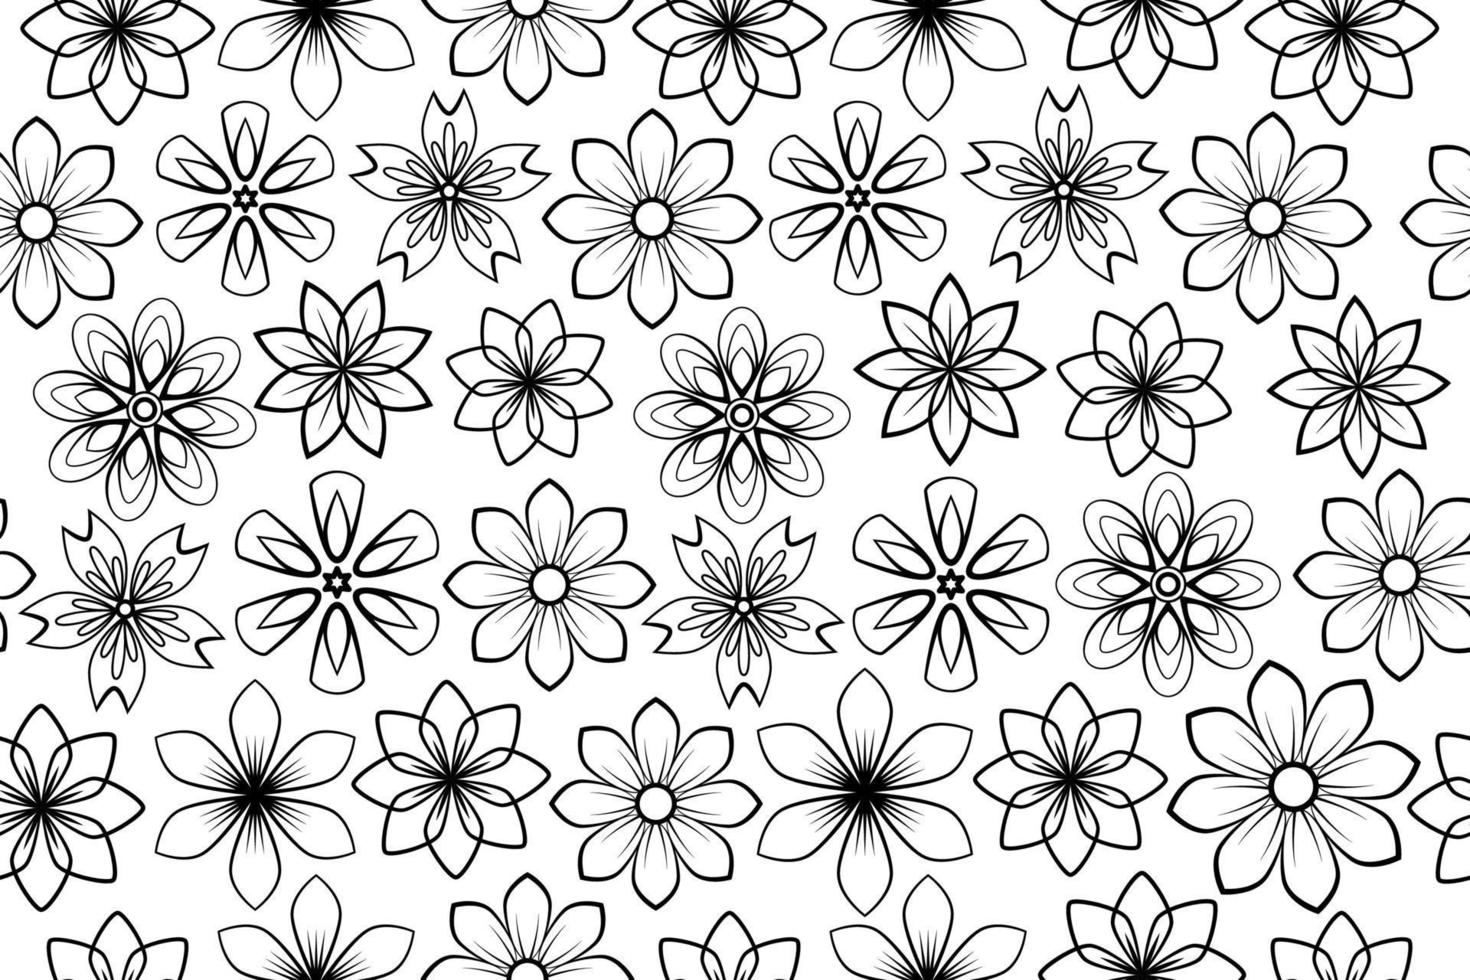 blanco y negro transparente floral. flores y hojas. repitiendo fondo monocromático. estampado de verano y primavera. flores de arte de línea en flor y hierbas en flor con líneas negras sobre fondo blanco. vector